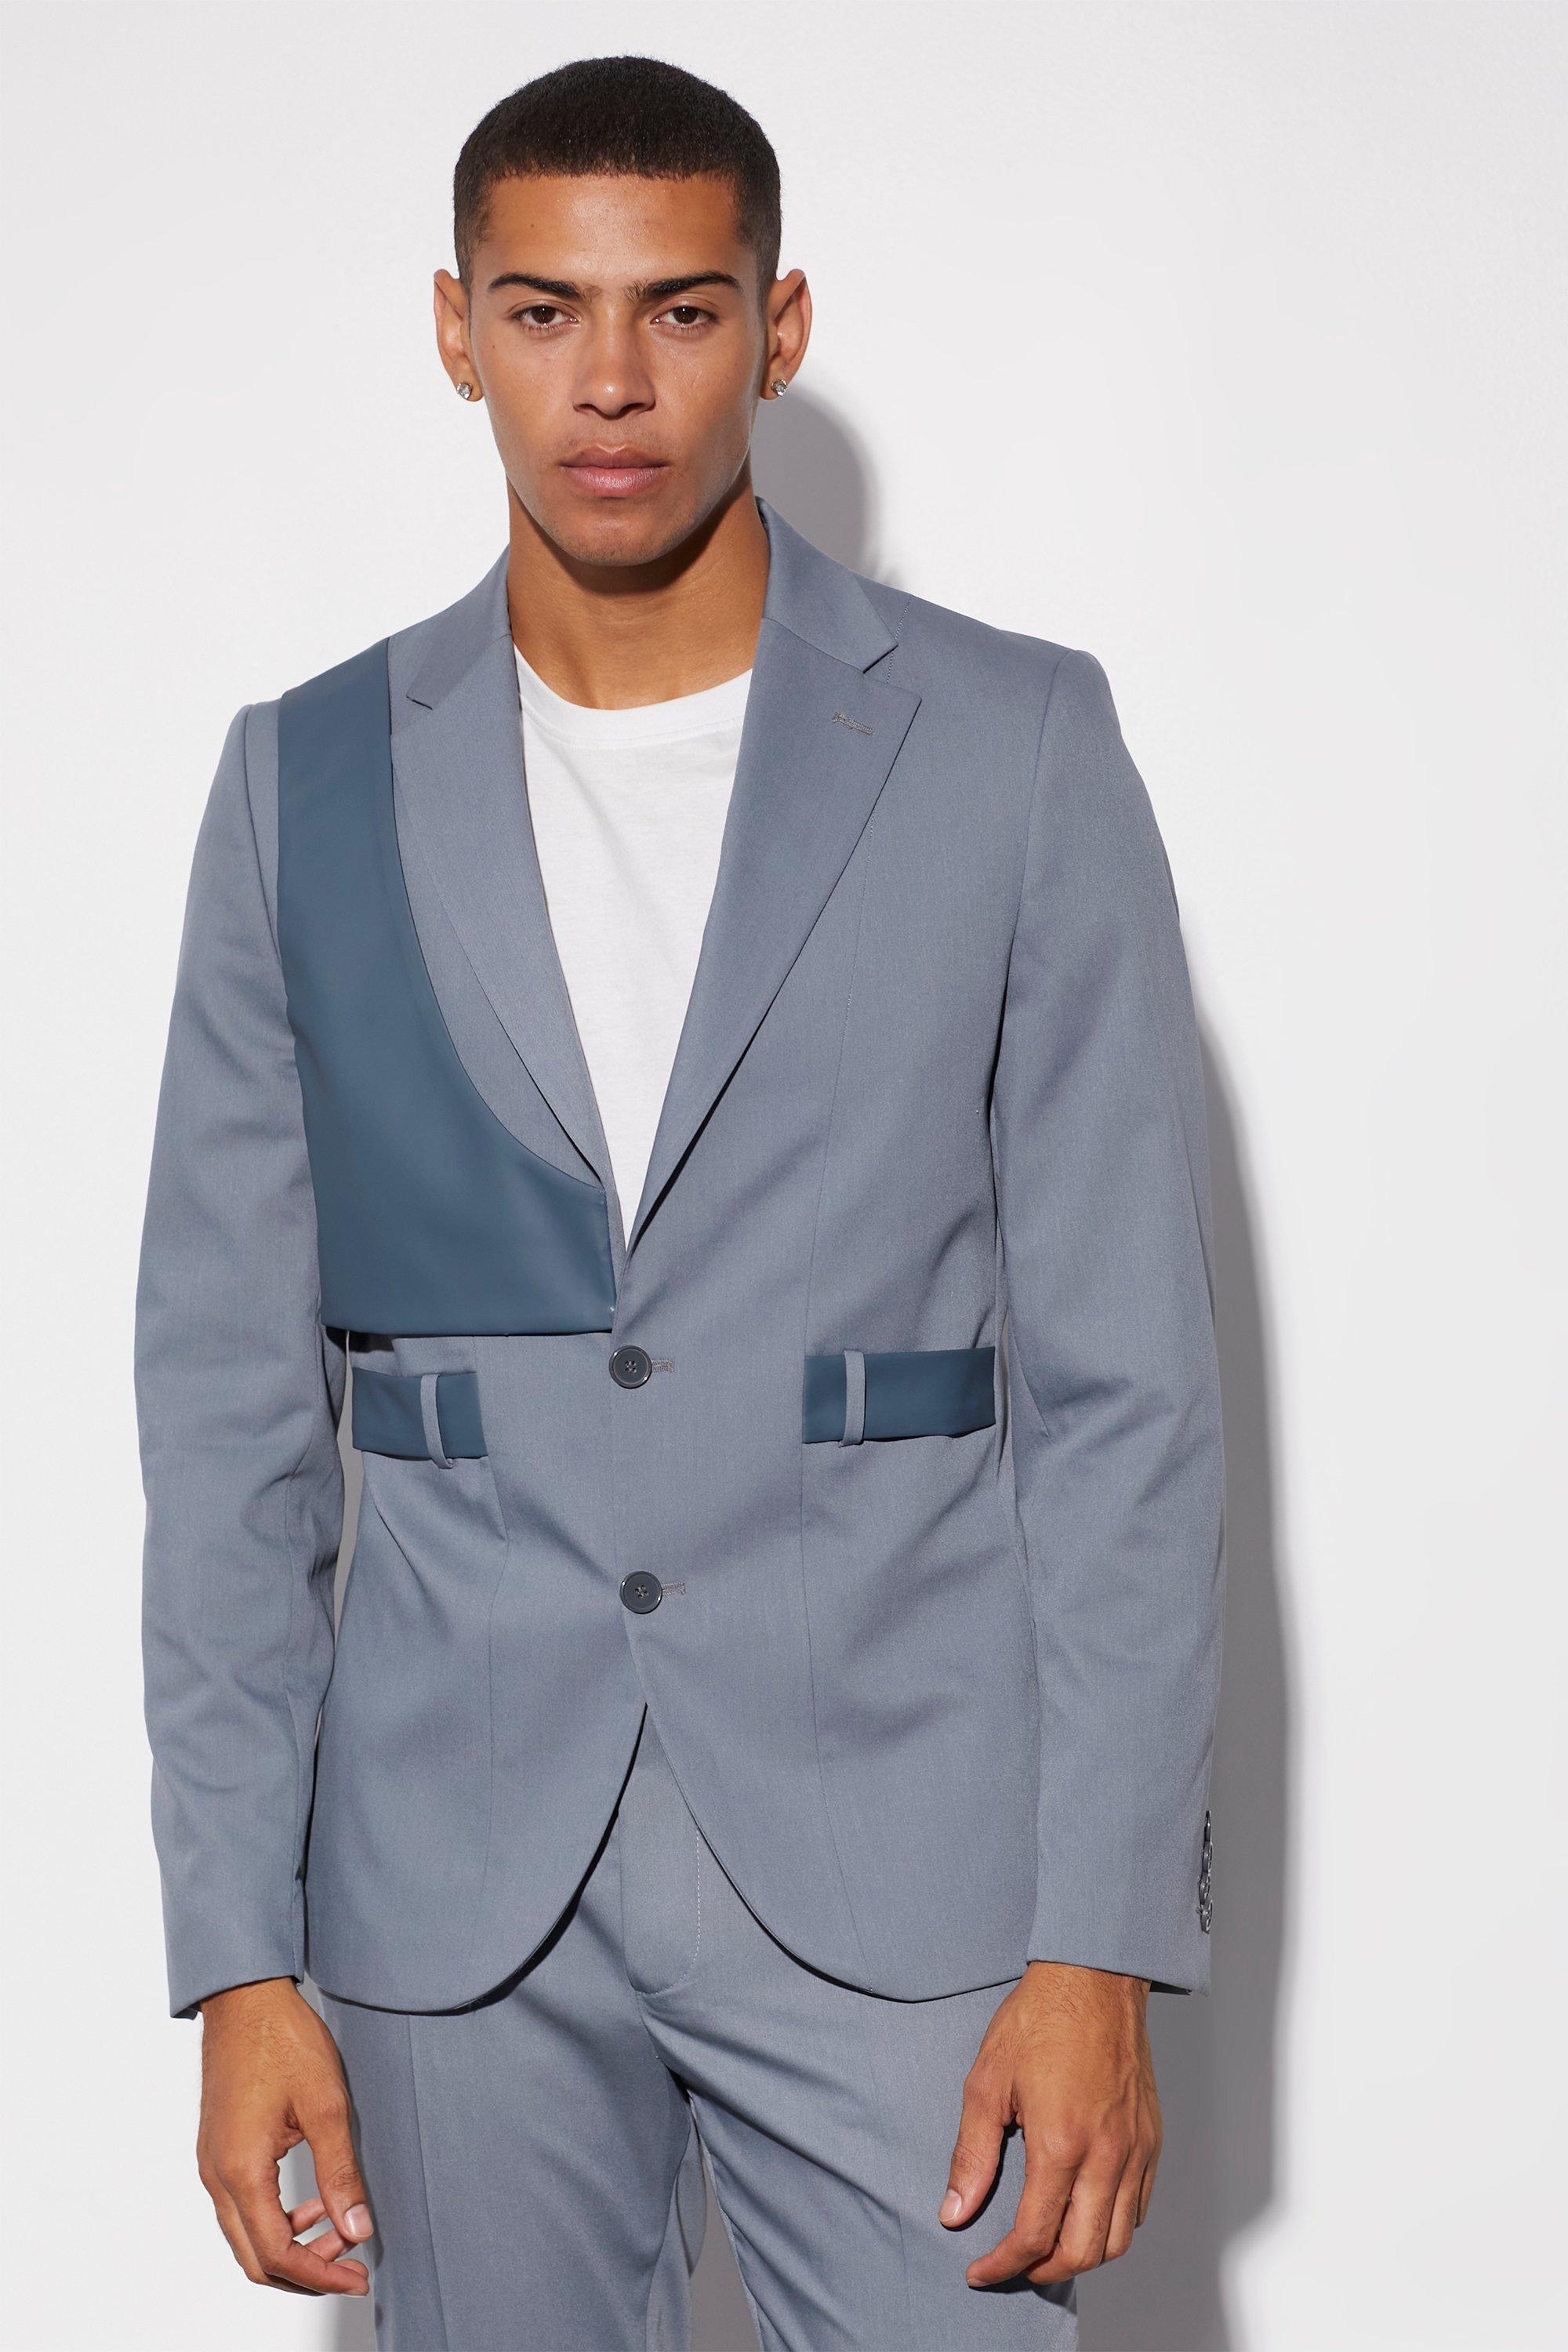 men's slim fit harness carabiner suit jacket - blue - 38, blue